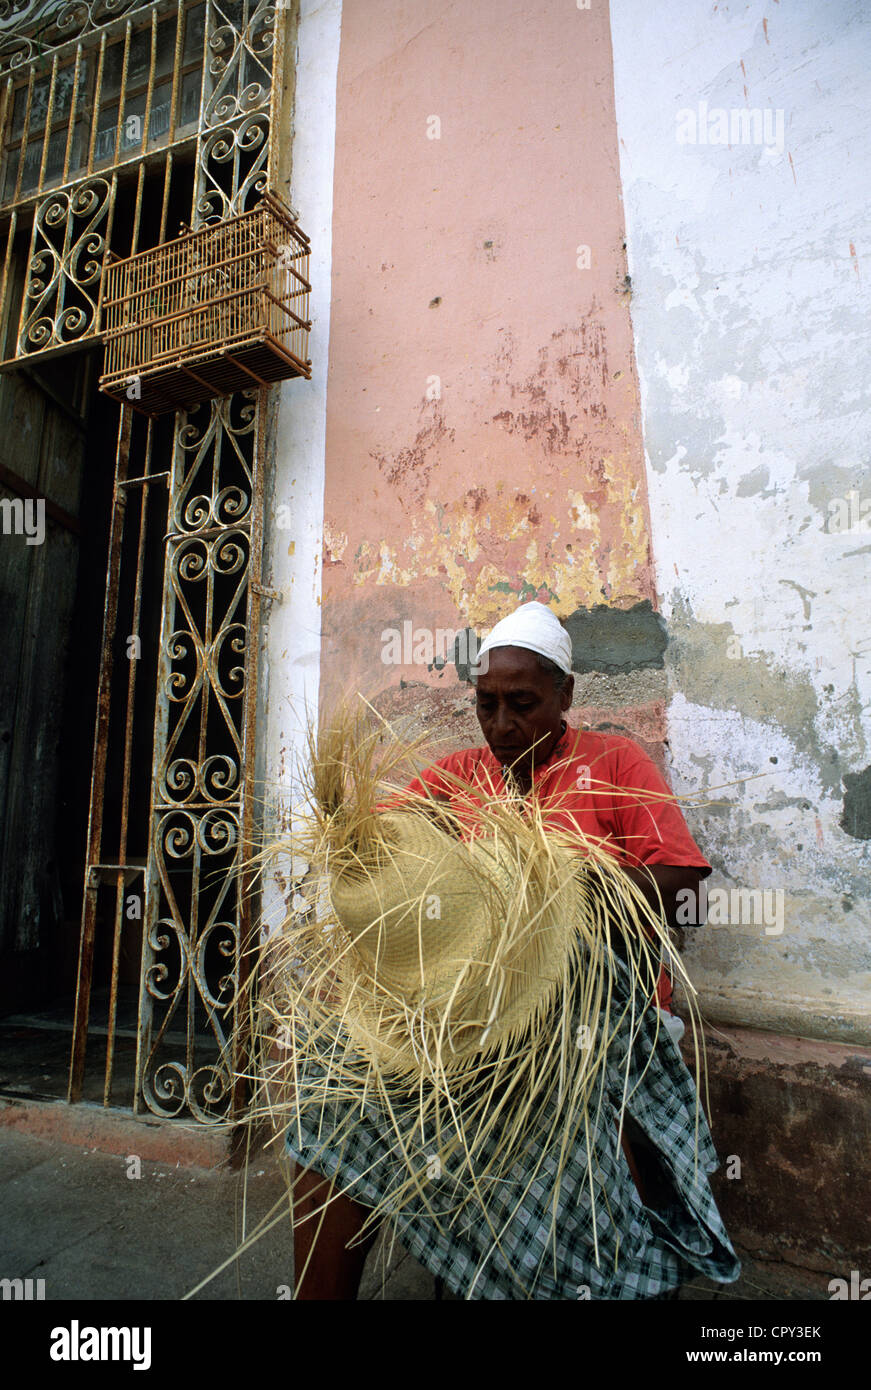 Kuba, Provinz Sancti Spiritus, Trinidad de Cuba aufgeführt als Weltkulturerbe der UNESCO, Frau schlängelt einen Hut vor eine verblichene Fassade Stockfoto